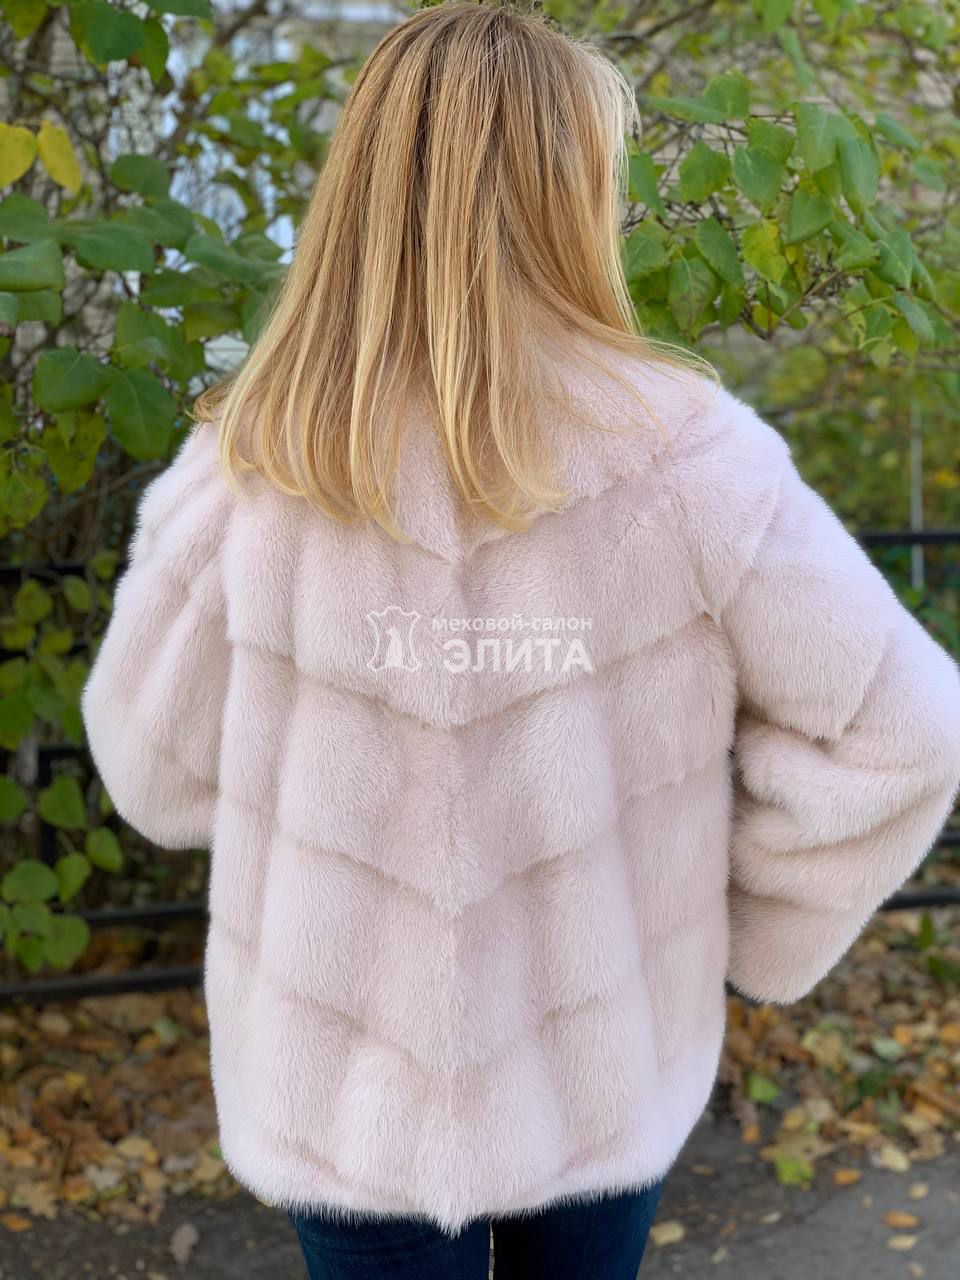 Куртка из норки S-12021, р-р 46-50, цена 94600 рублей в интернет-магазине кожи и меха ЭЛИТА. Вид 2